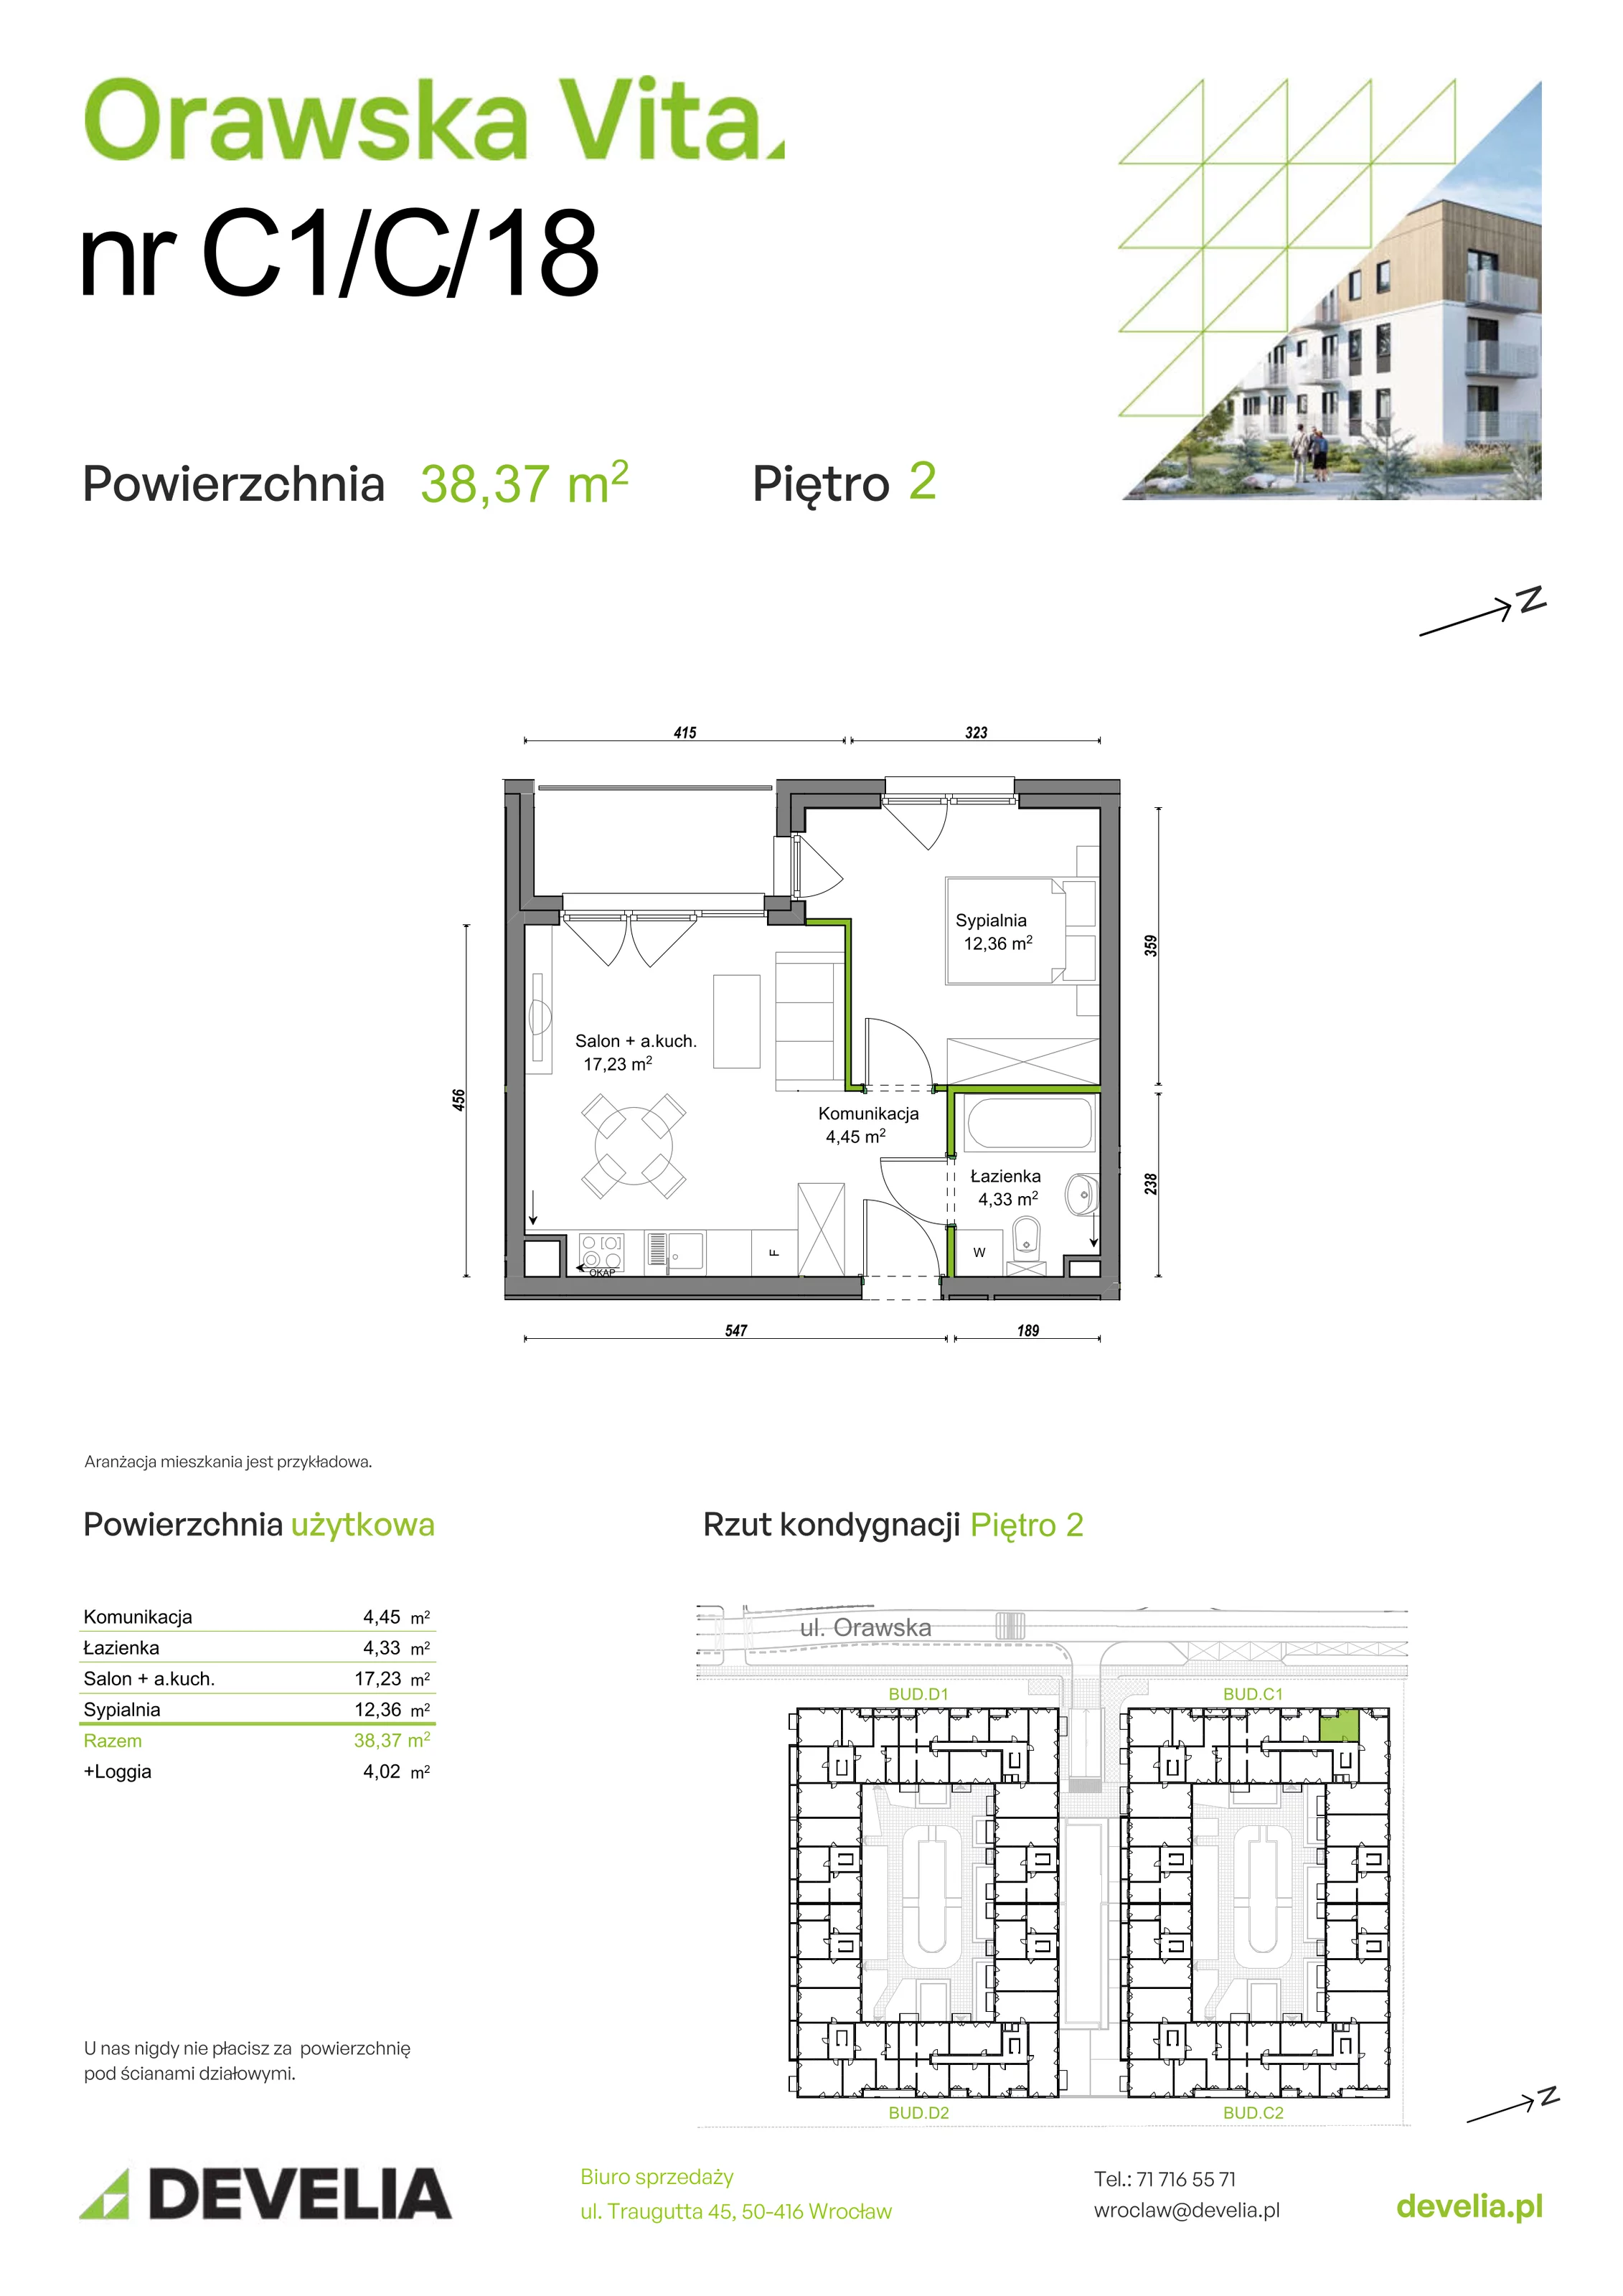 Mieszkanie 38,37 m², piętro 2, oferta nr C1/C/18, Orawska Vita, Wrocław, Ołtaszyn, Krzyki, ul. Orawska 73